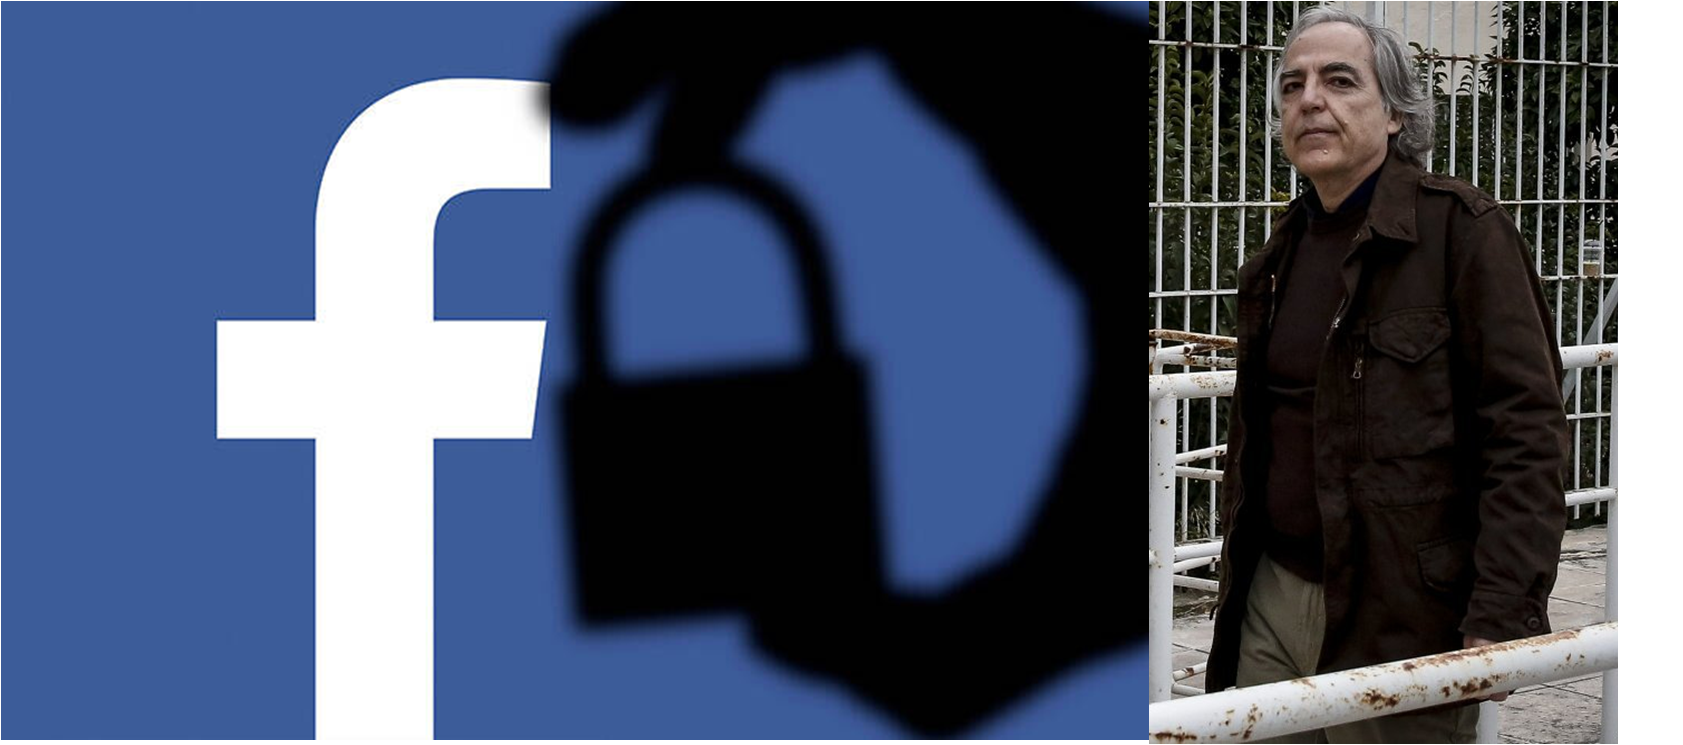 Γιατί το Facebook «μπλοκάρει» αναρτήσεις για τον Κουφοντίνα - Η ερώτηση της Αυγής  και η απάντηση